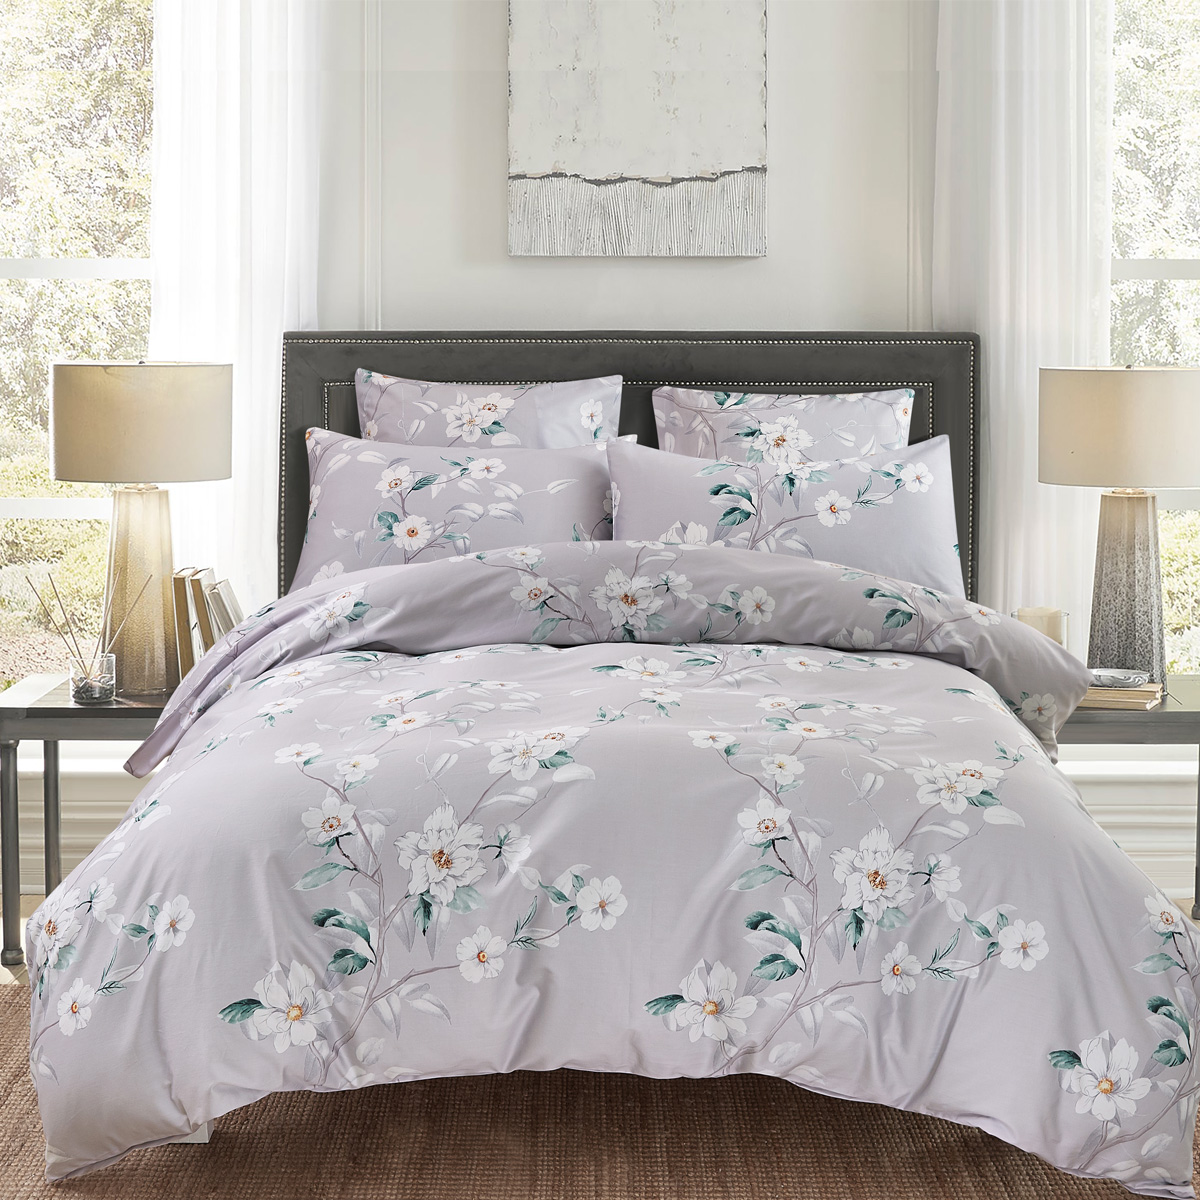 Комплект постельного белья 1,5-спальный Pappel White Flower, серый Pappel EYGCA23058/150200S EYGCA23058/150200S - фото 1